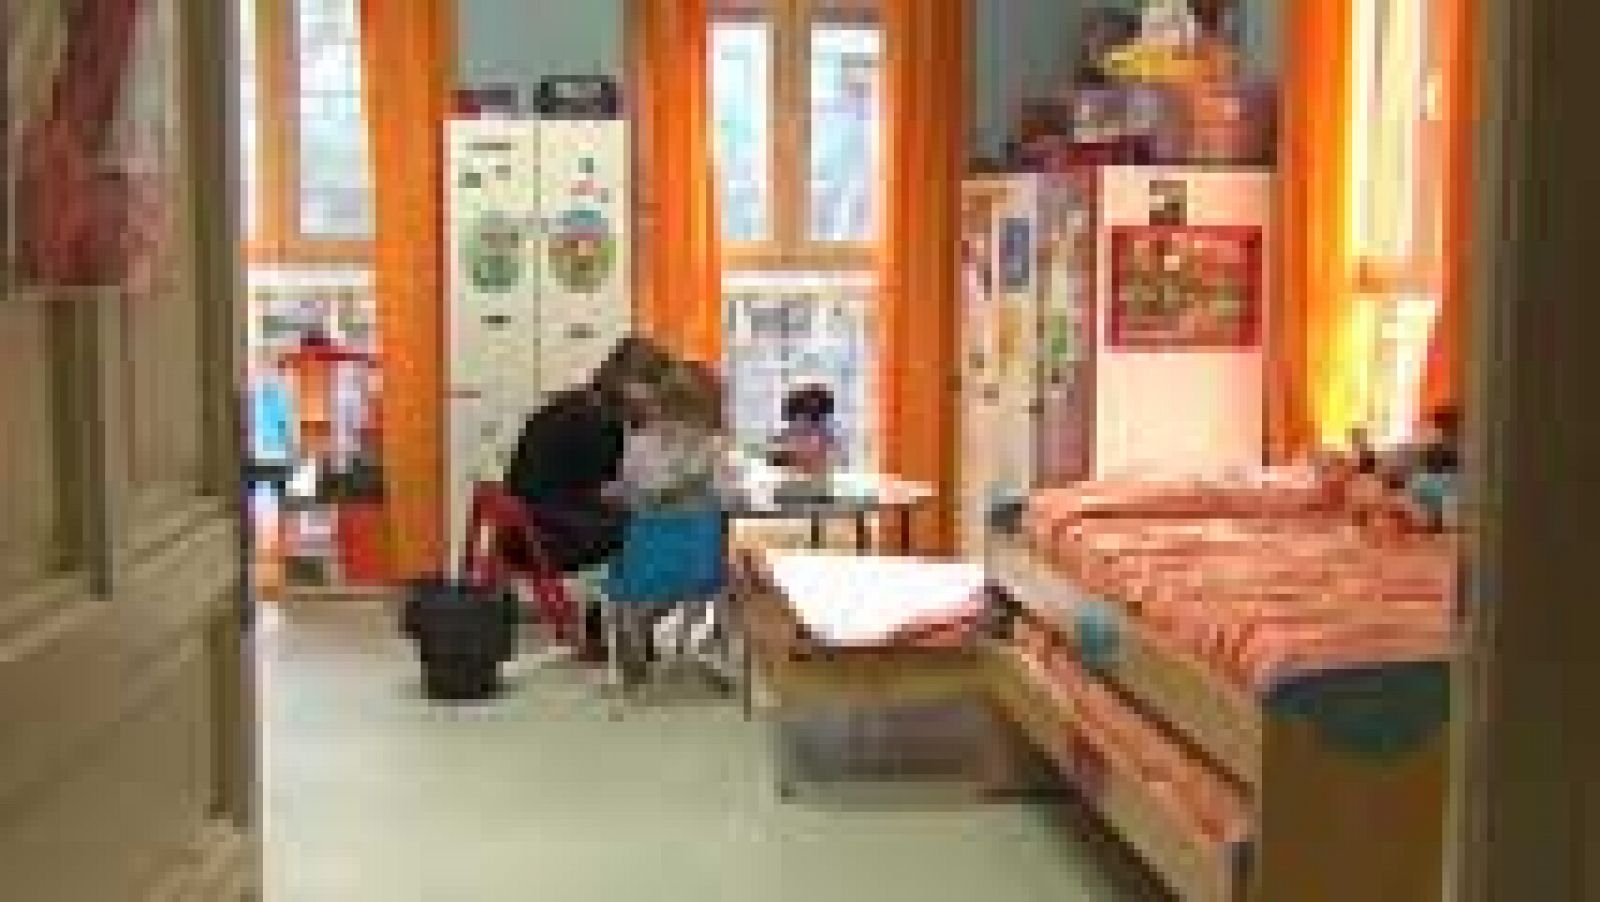  En España unos 21.000 menores y adolescentes viven con familias de acogida